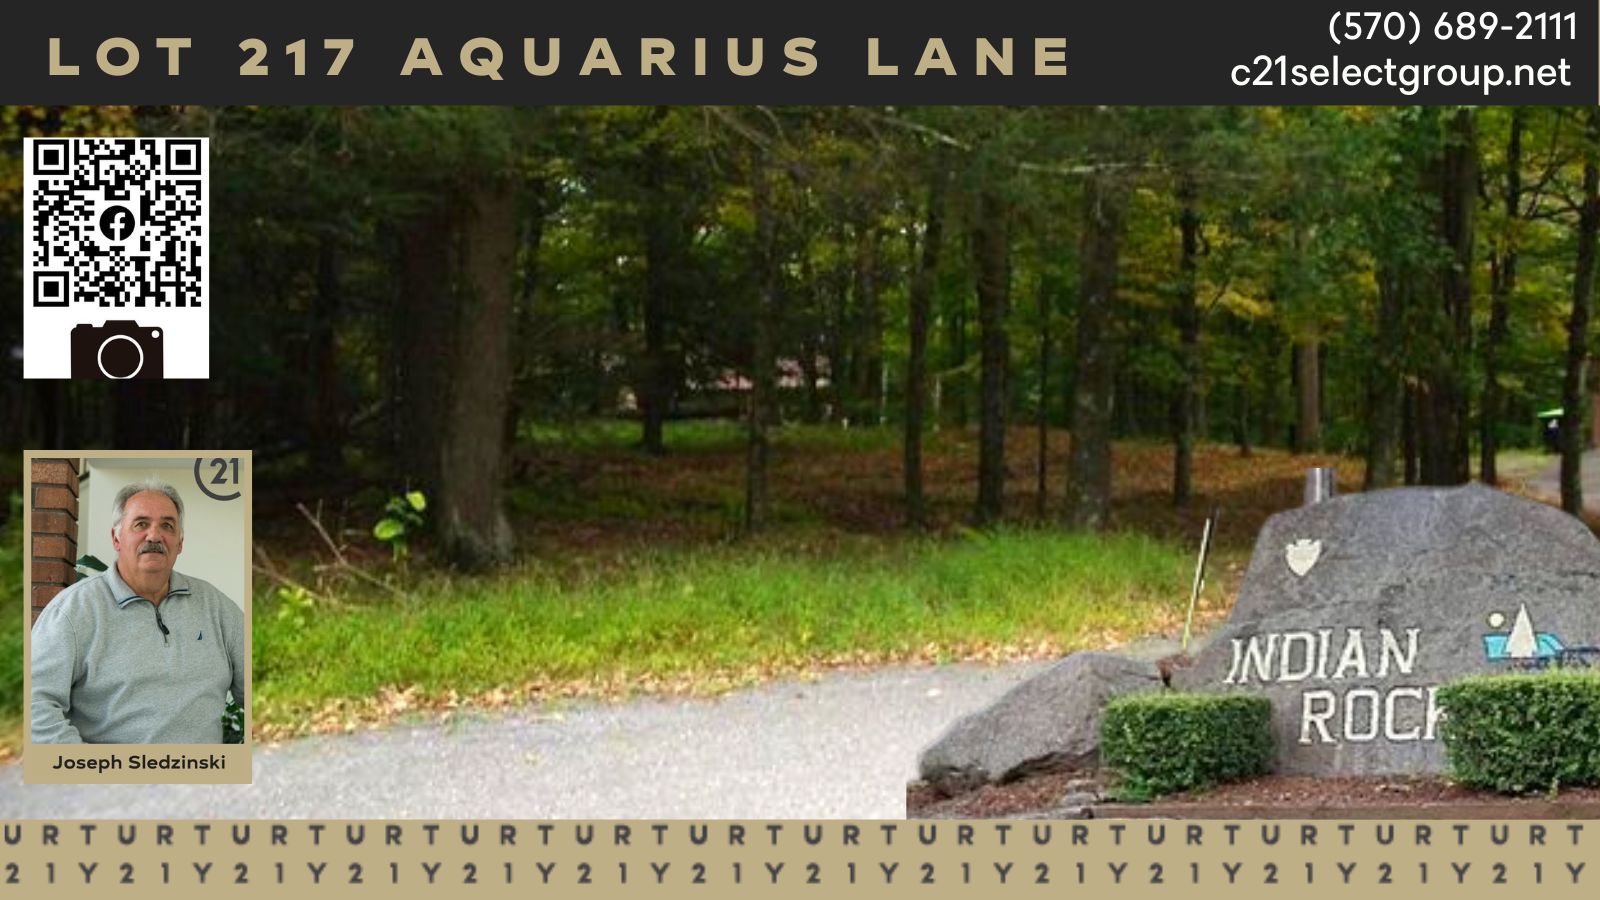 Lot 217 Aquarius Lane: Building Lot in Indian Rocks